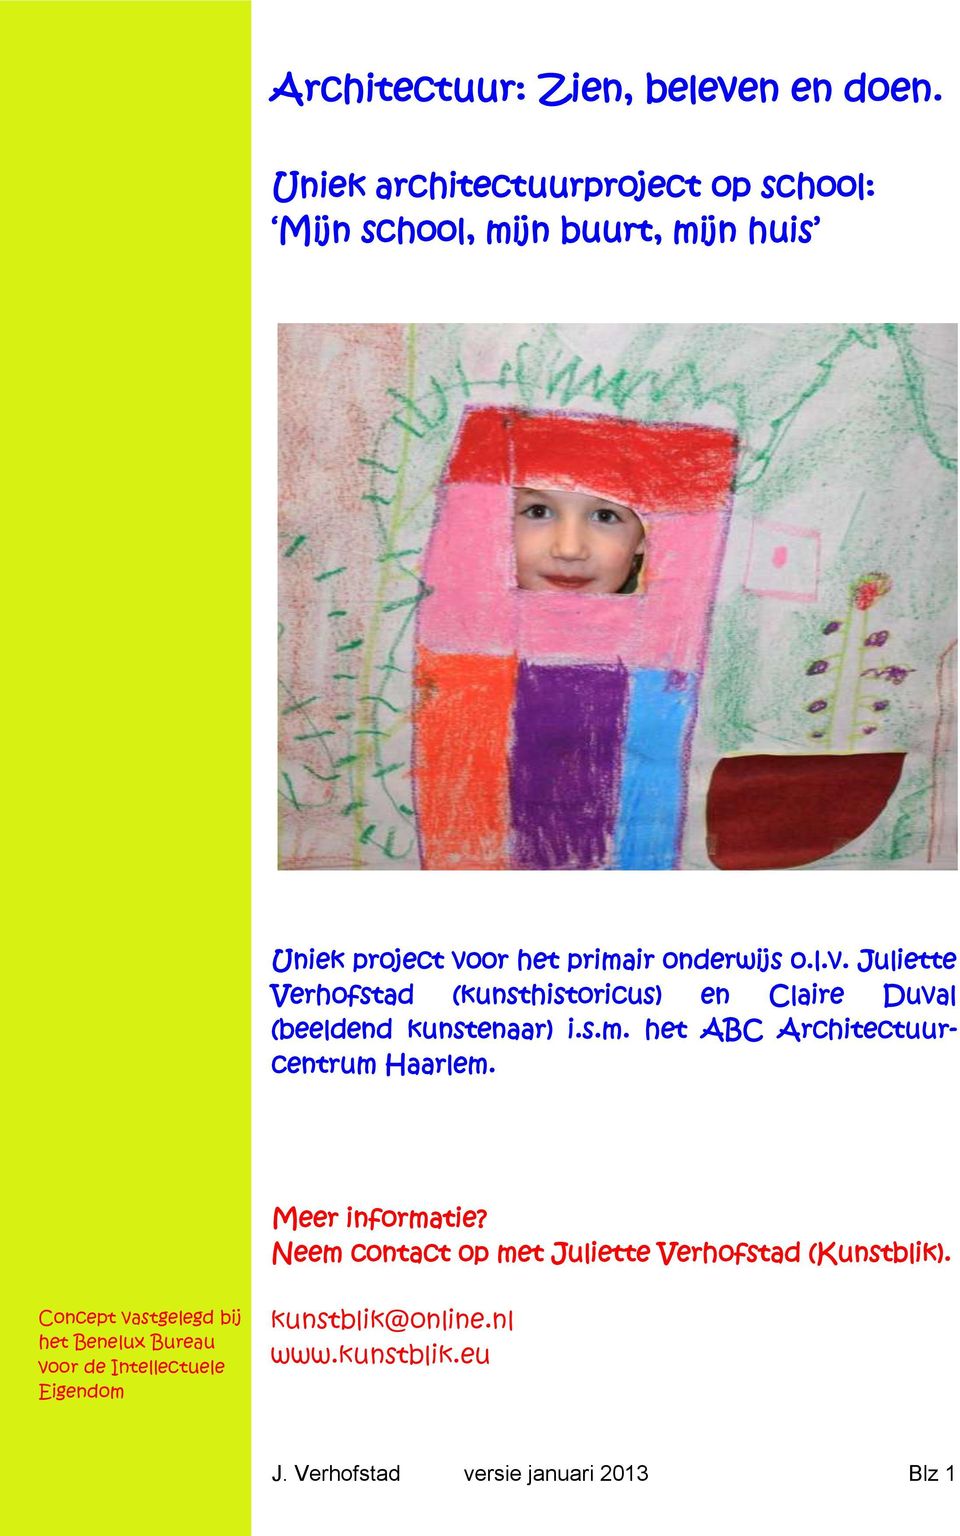 or het primair onderwijs o.l.v. Juliette Verhofstad (kunsthistoricus) en Claire Duval (beeldend kunstenaar) i.s.m. het ABC Architectuurcentrum Haarlem.